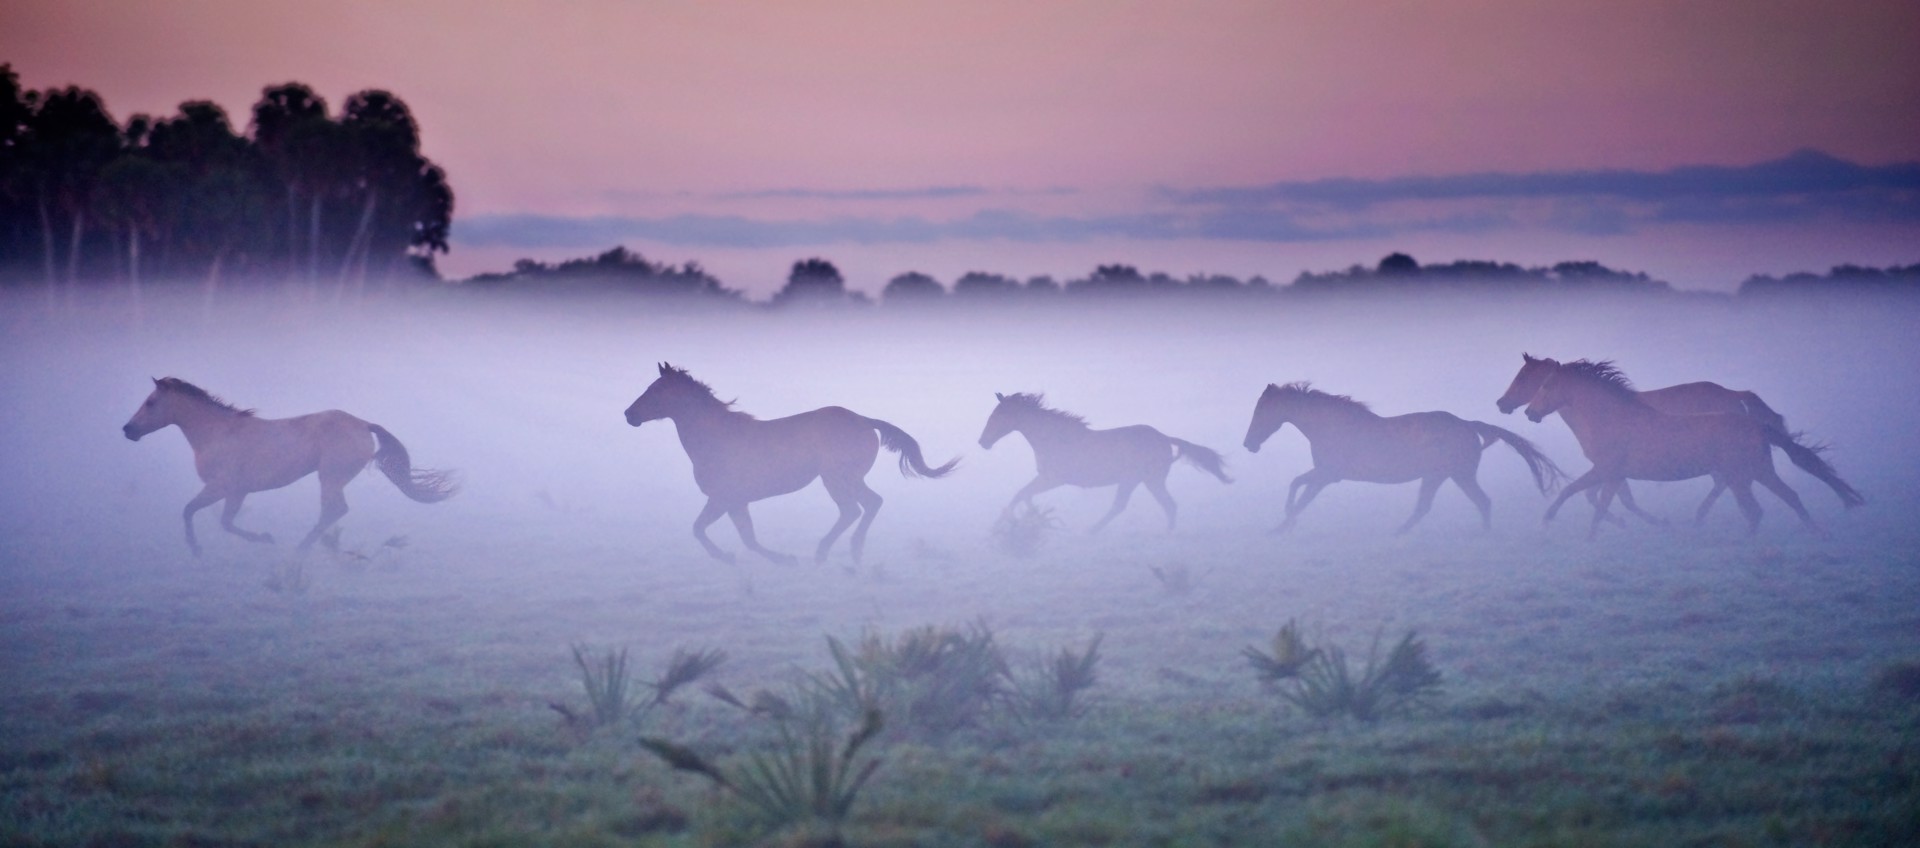 Galloping Horses, Seminole Ranch by Carlton Ward Jr